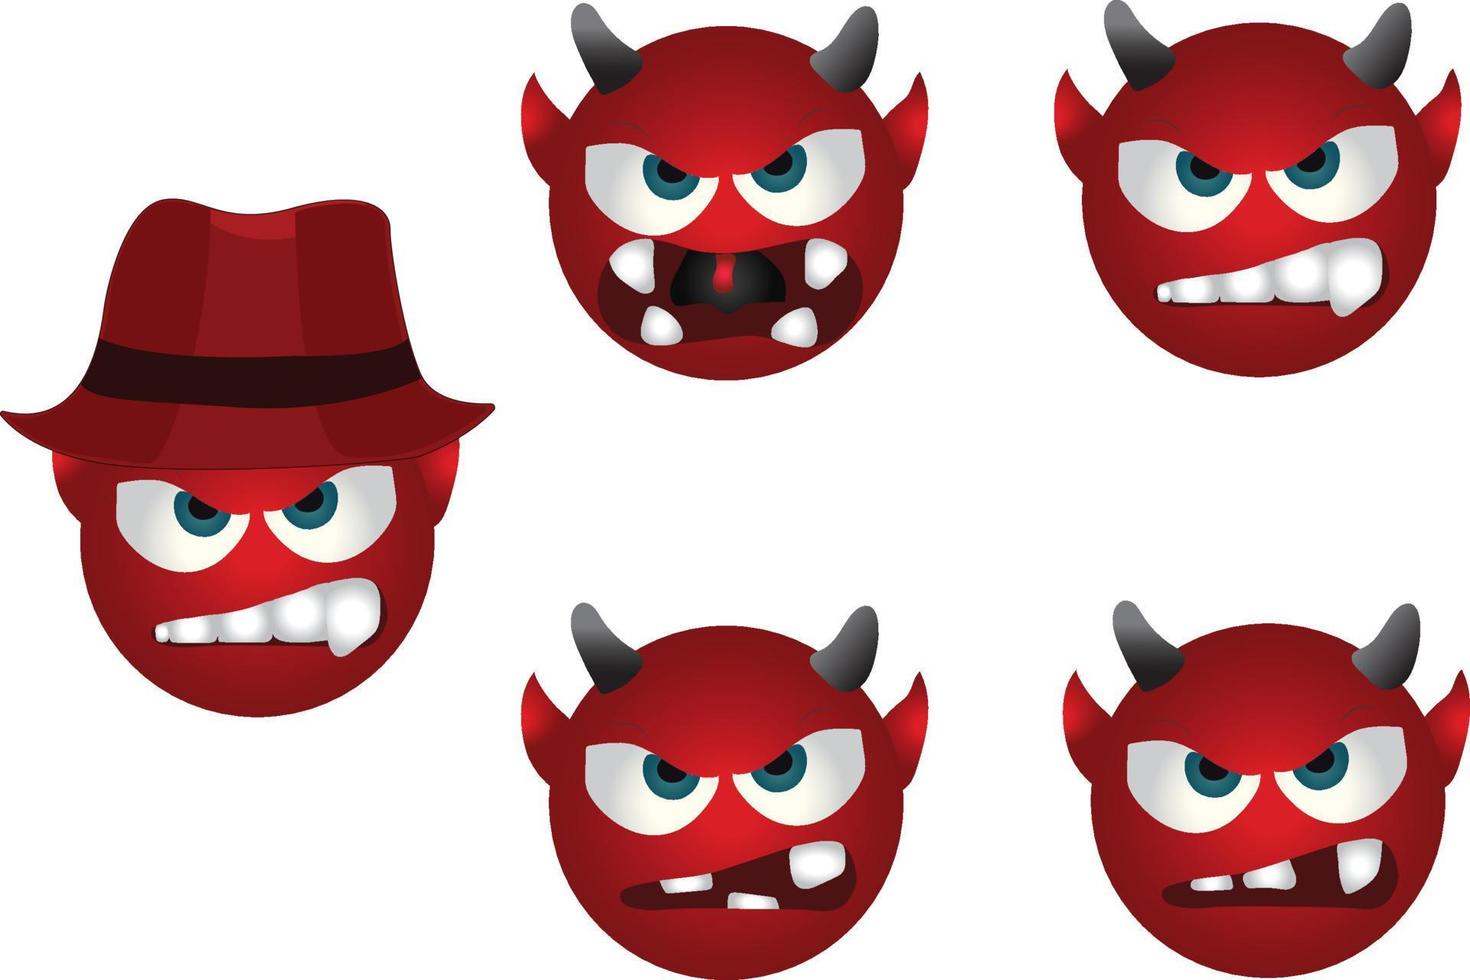 demon emoji vektor set. emojis halloween röd maskot karaktärssamling isolerad i vit bakgrund för grafiska designelement. vektor illustration pro vektor